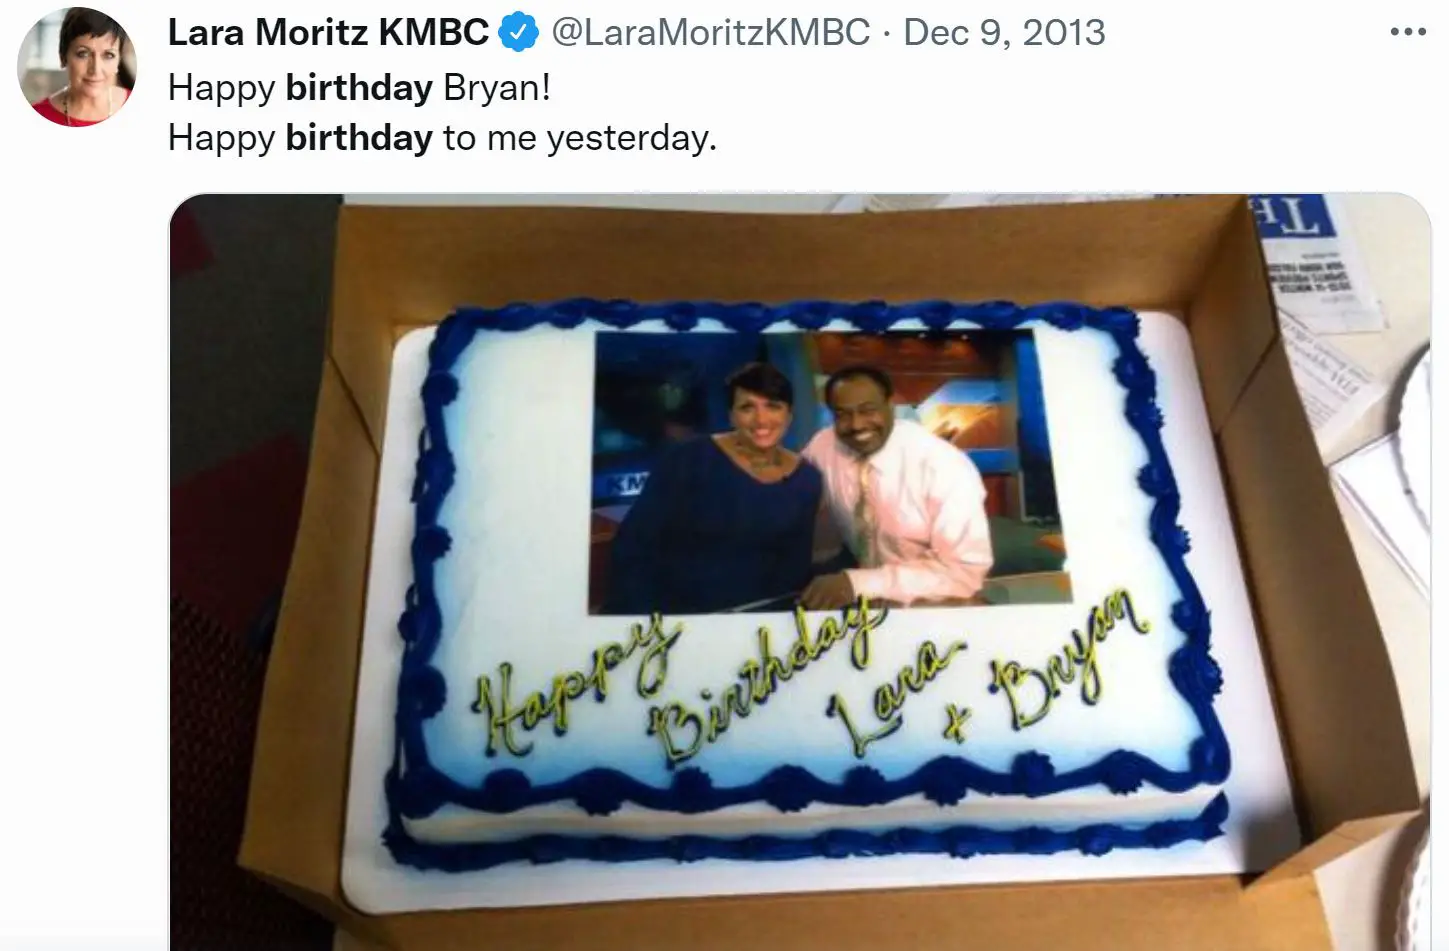 Lara Moritz's birthday